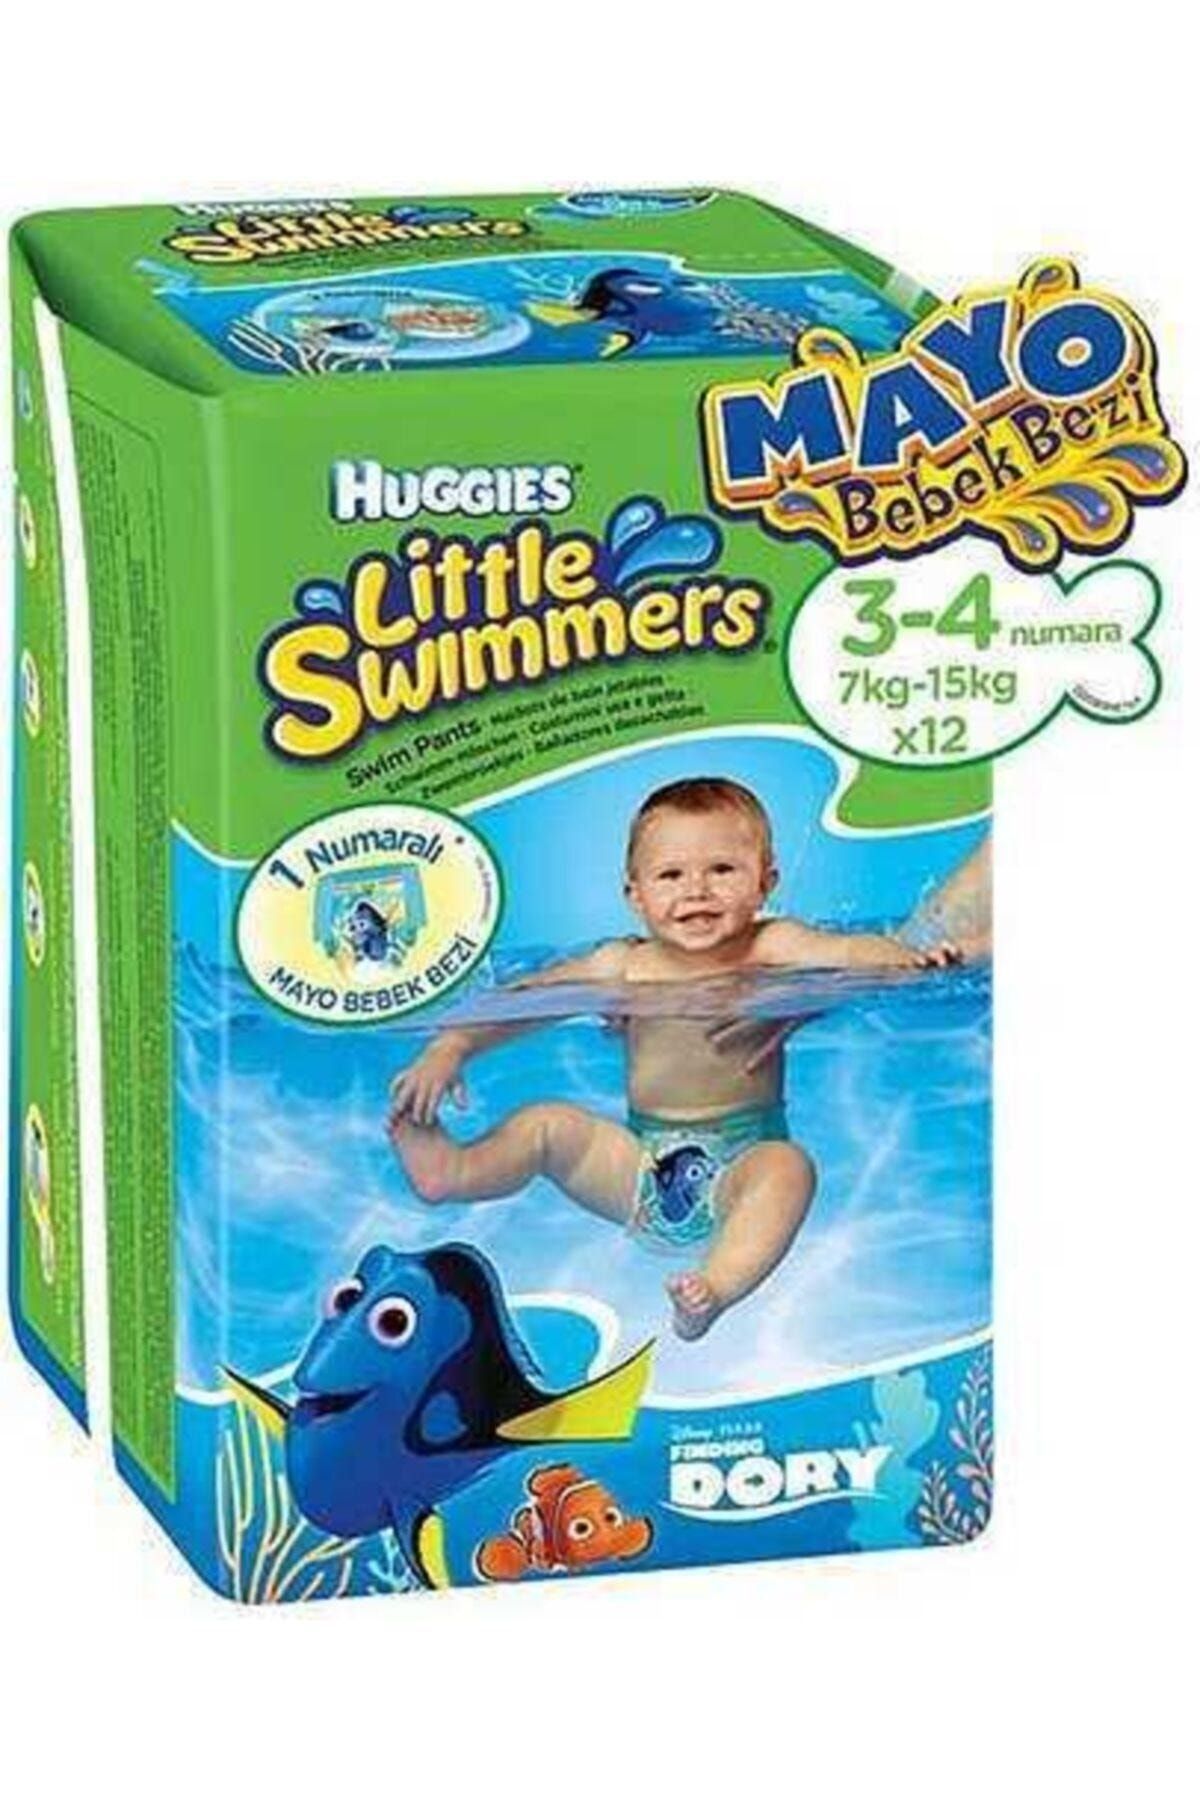 LOLIKO Huggies Little Swimmers Mayo Bebek Bezi 3-4 Numara